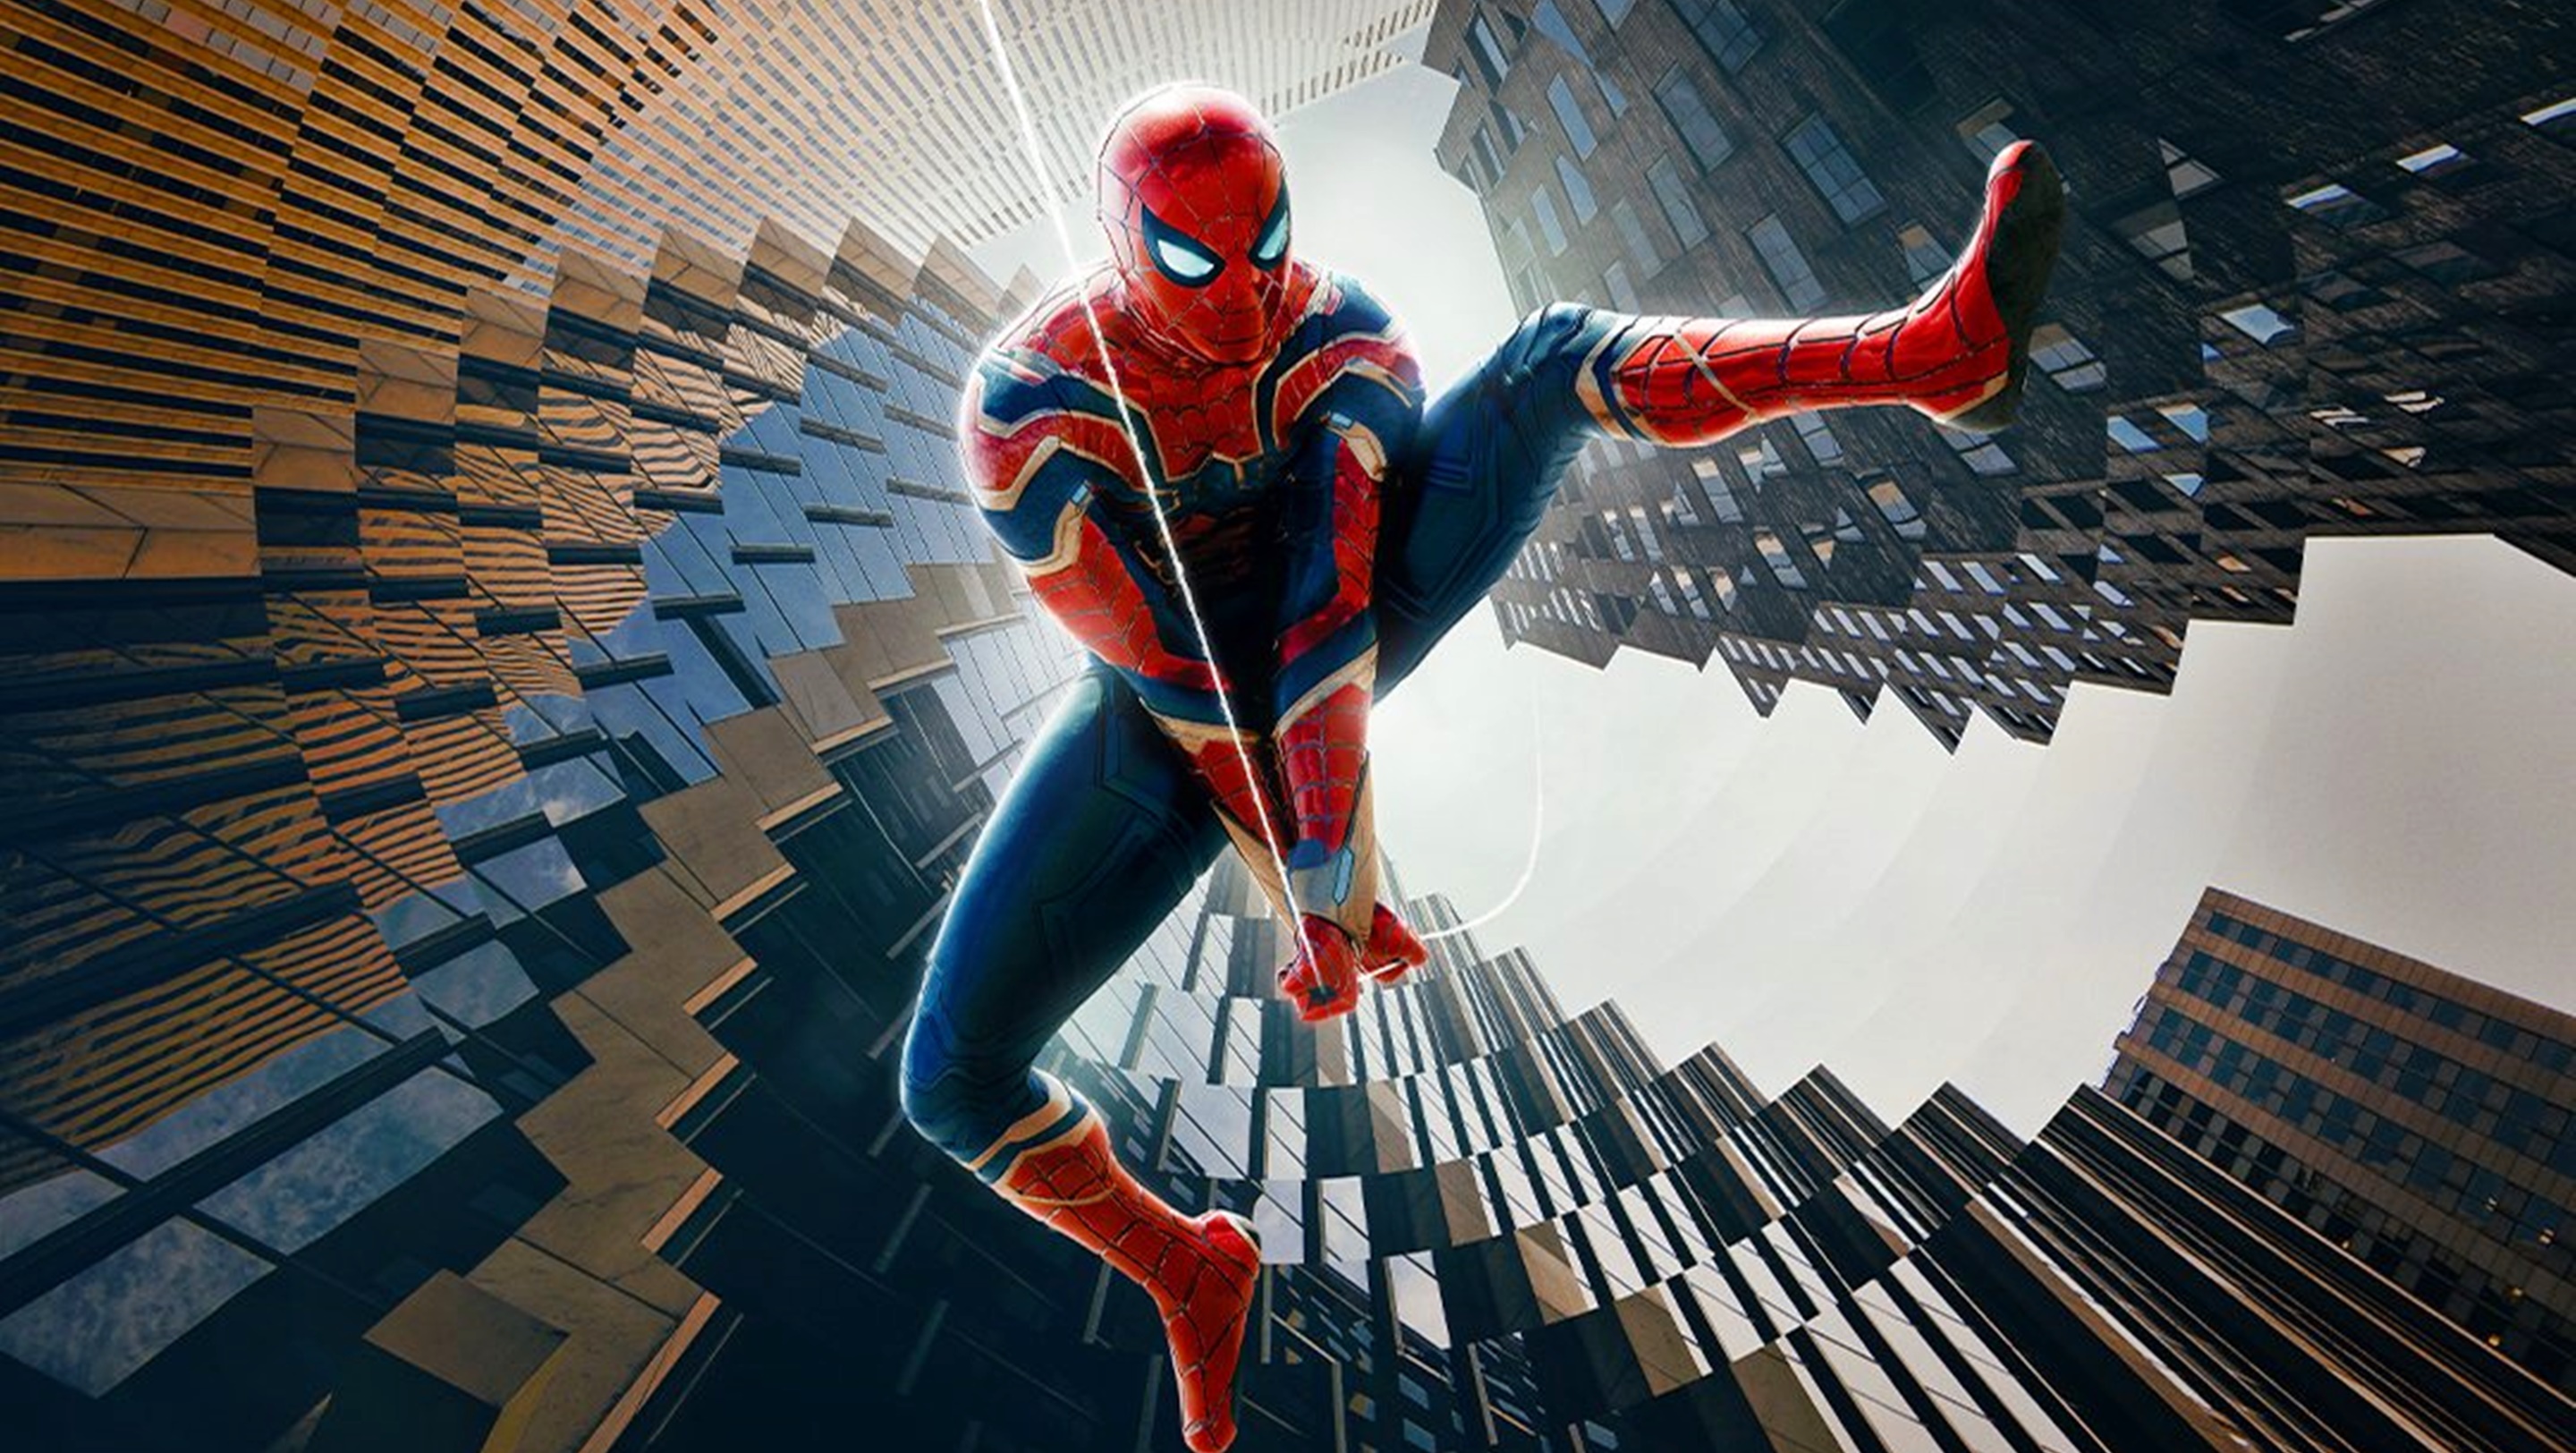 Dane DeHaan no regresará como el Duende Verde en Spider-Man 3